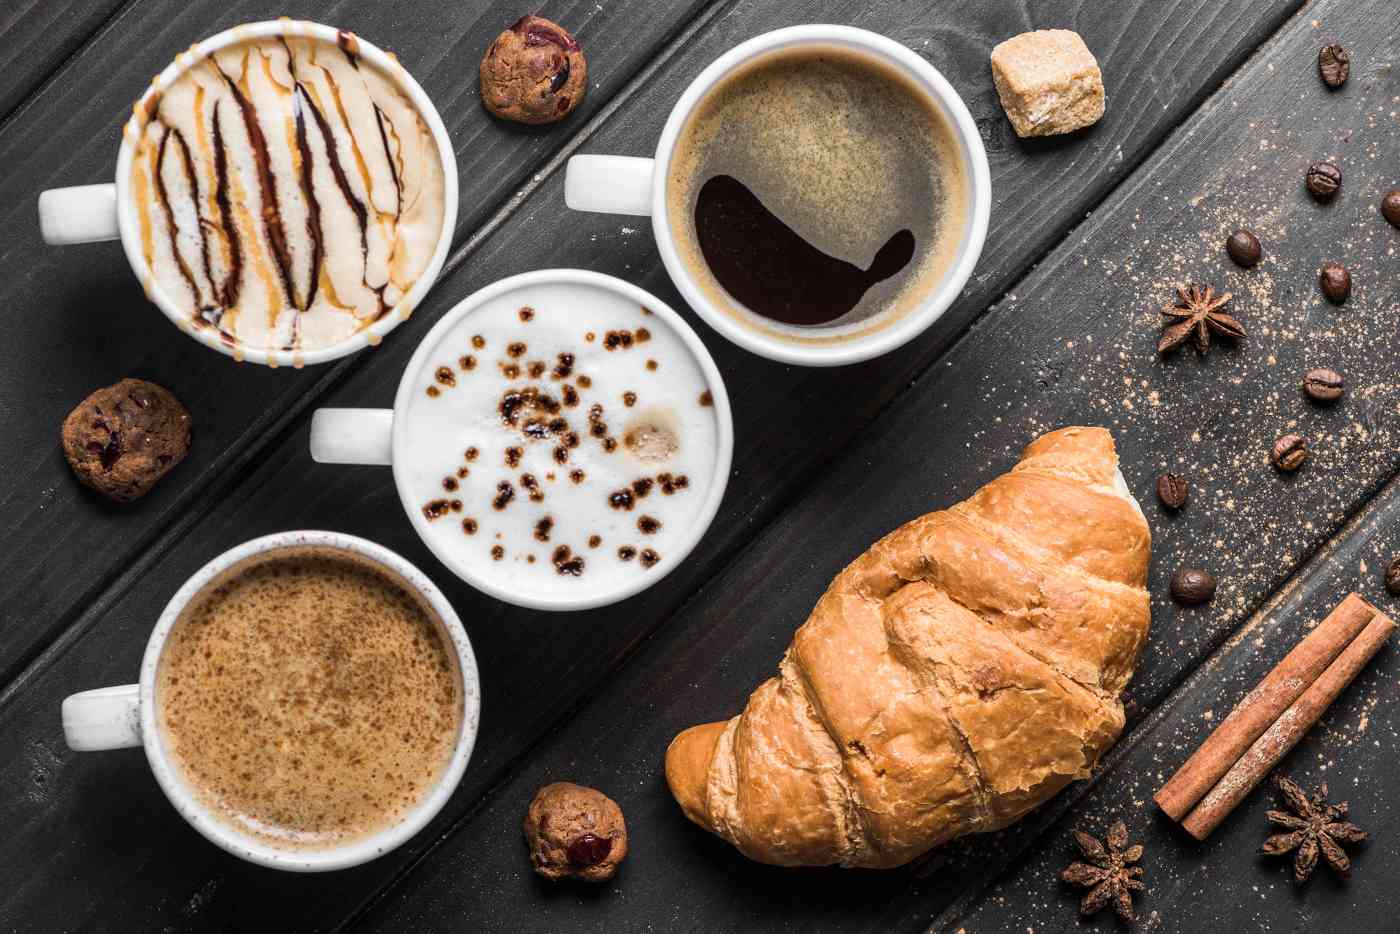 xícaras de café com croissant - emparelhando café e culinária